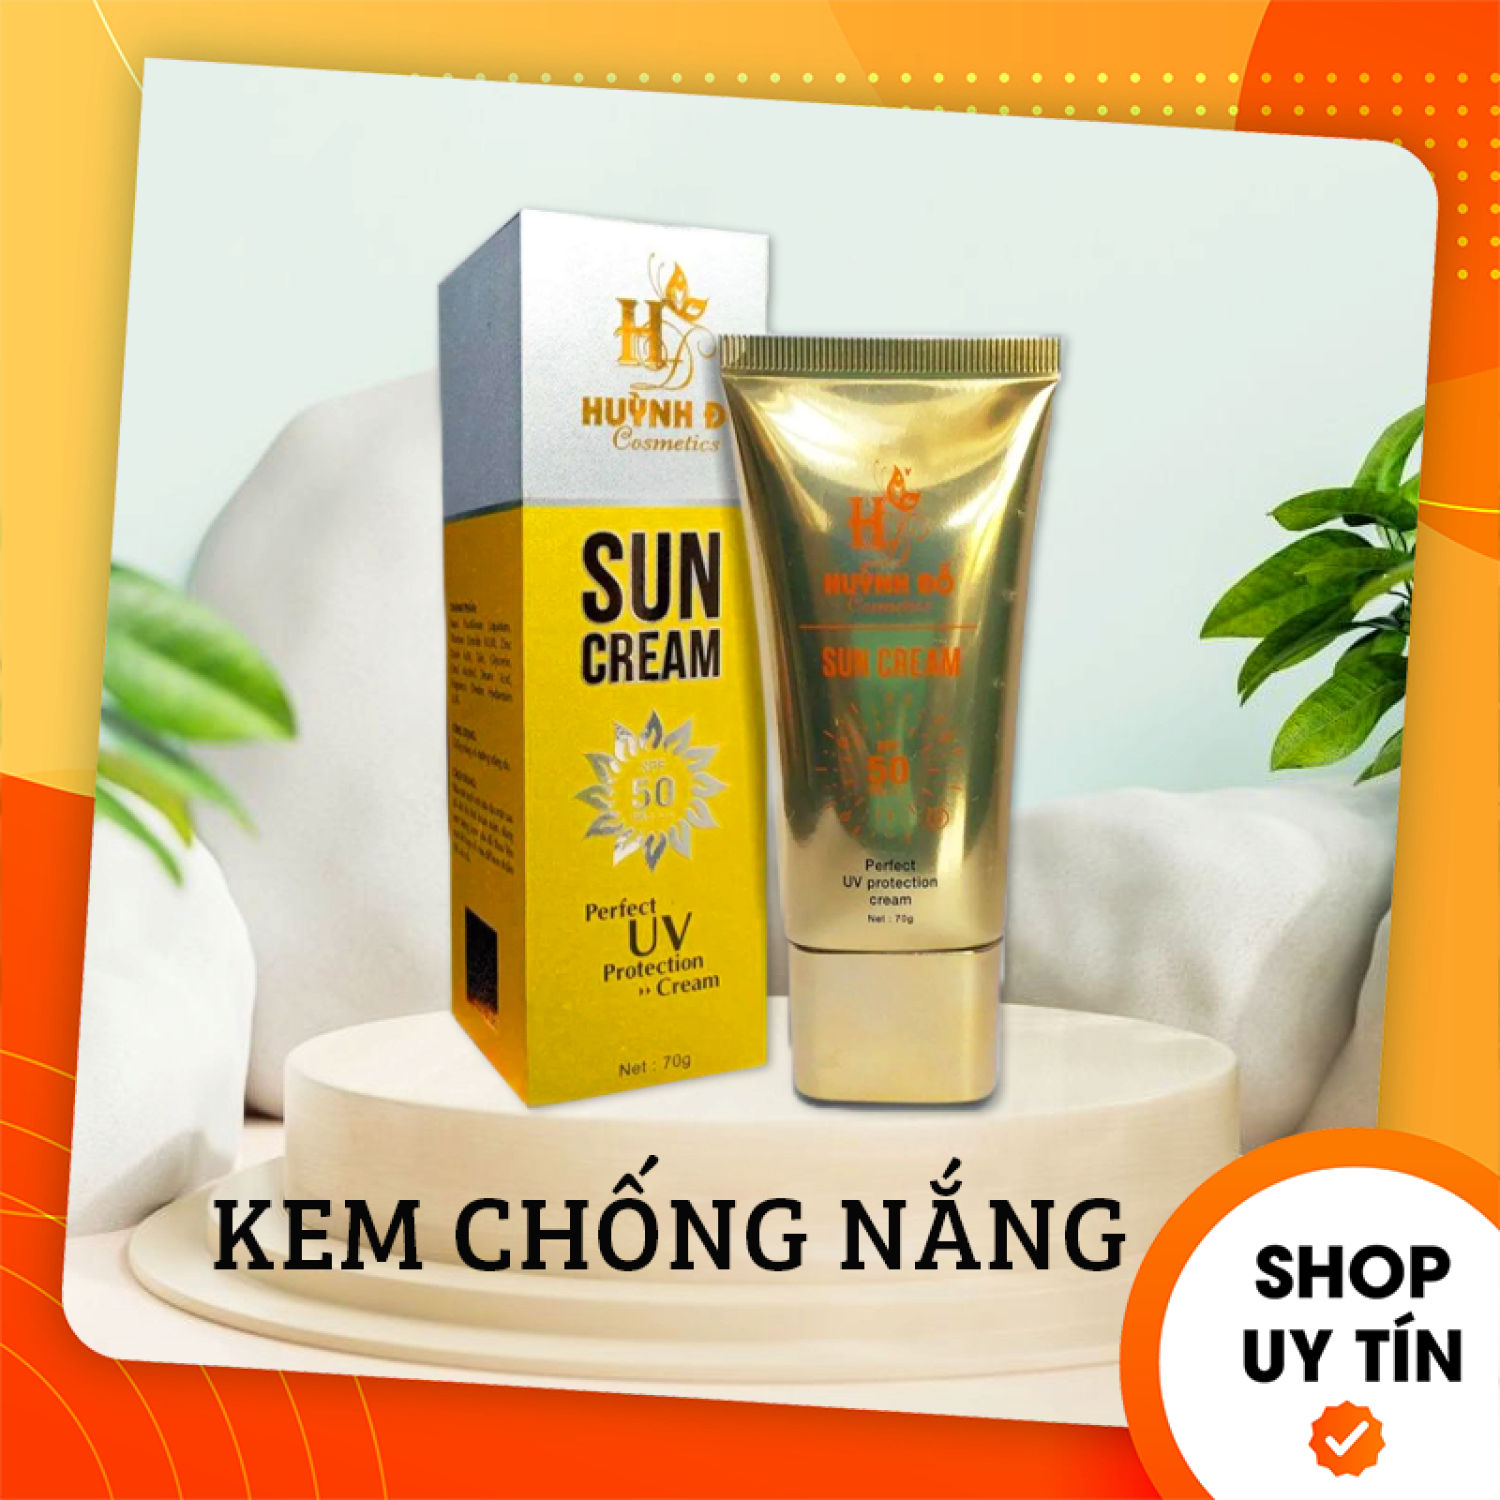 Kem Chống Nắng Sun Cream Huỳnh Đỗ Cosmetics Giá Sỉ